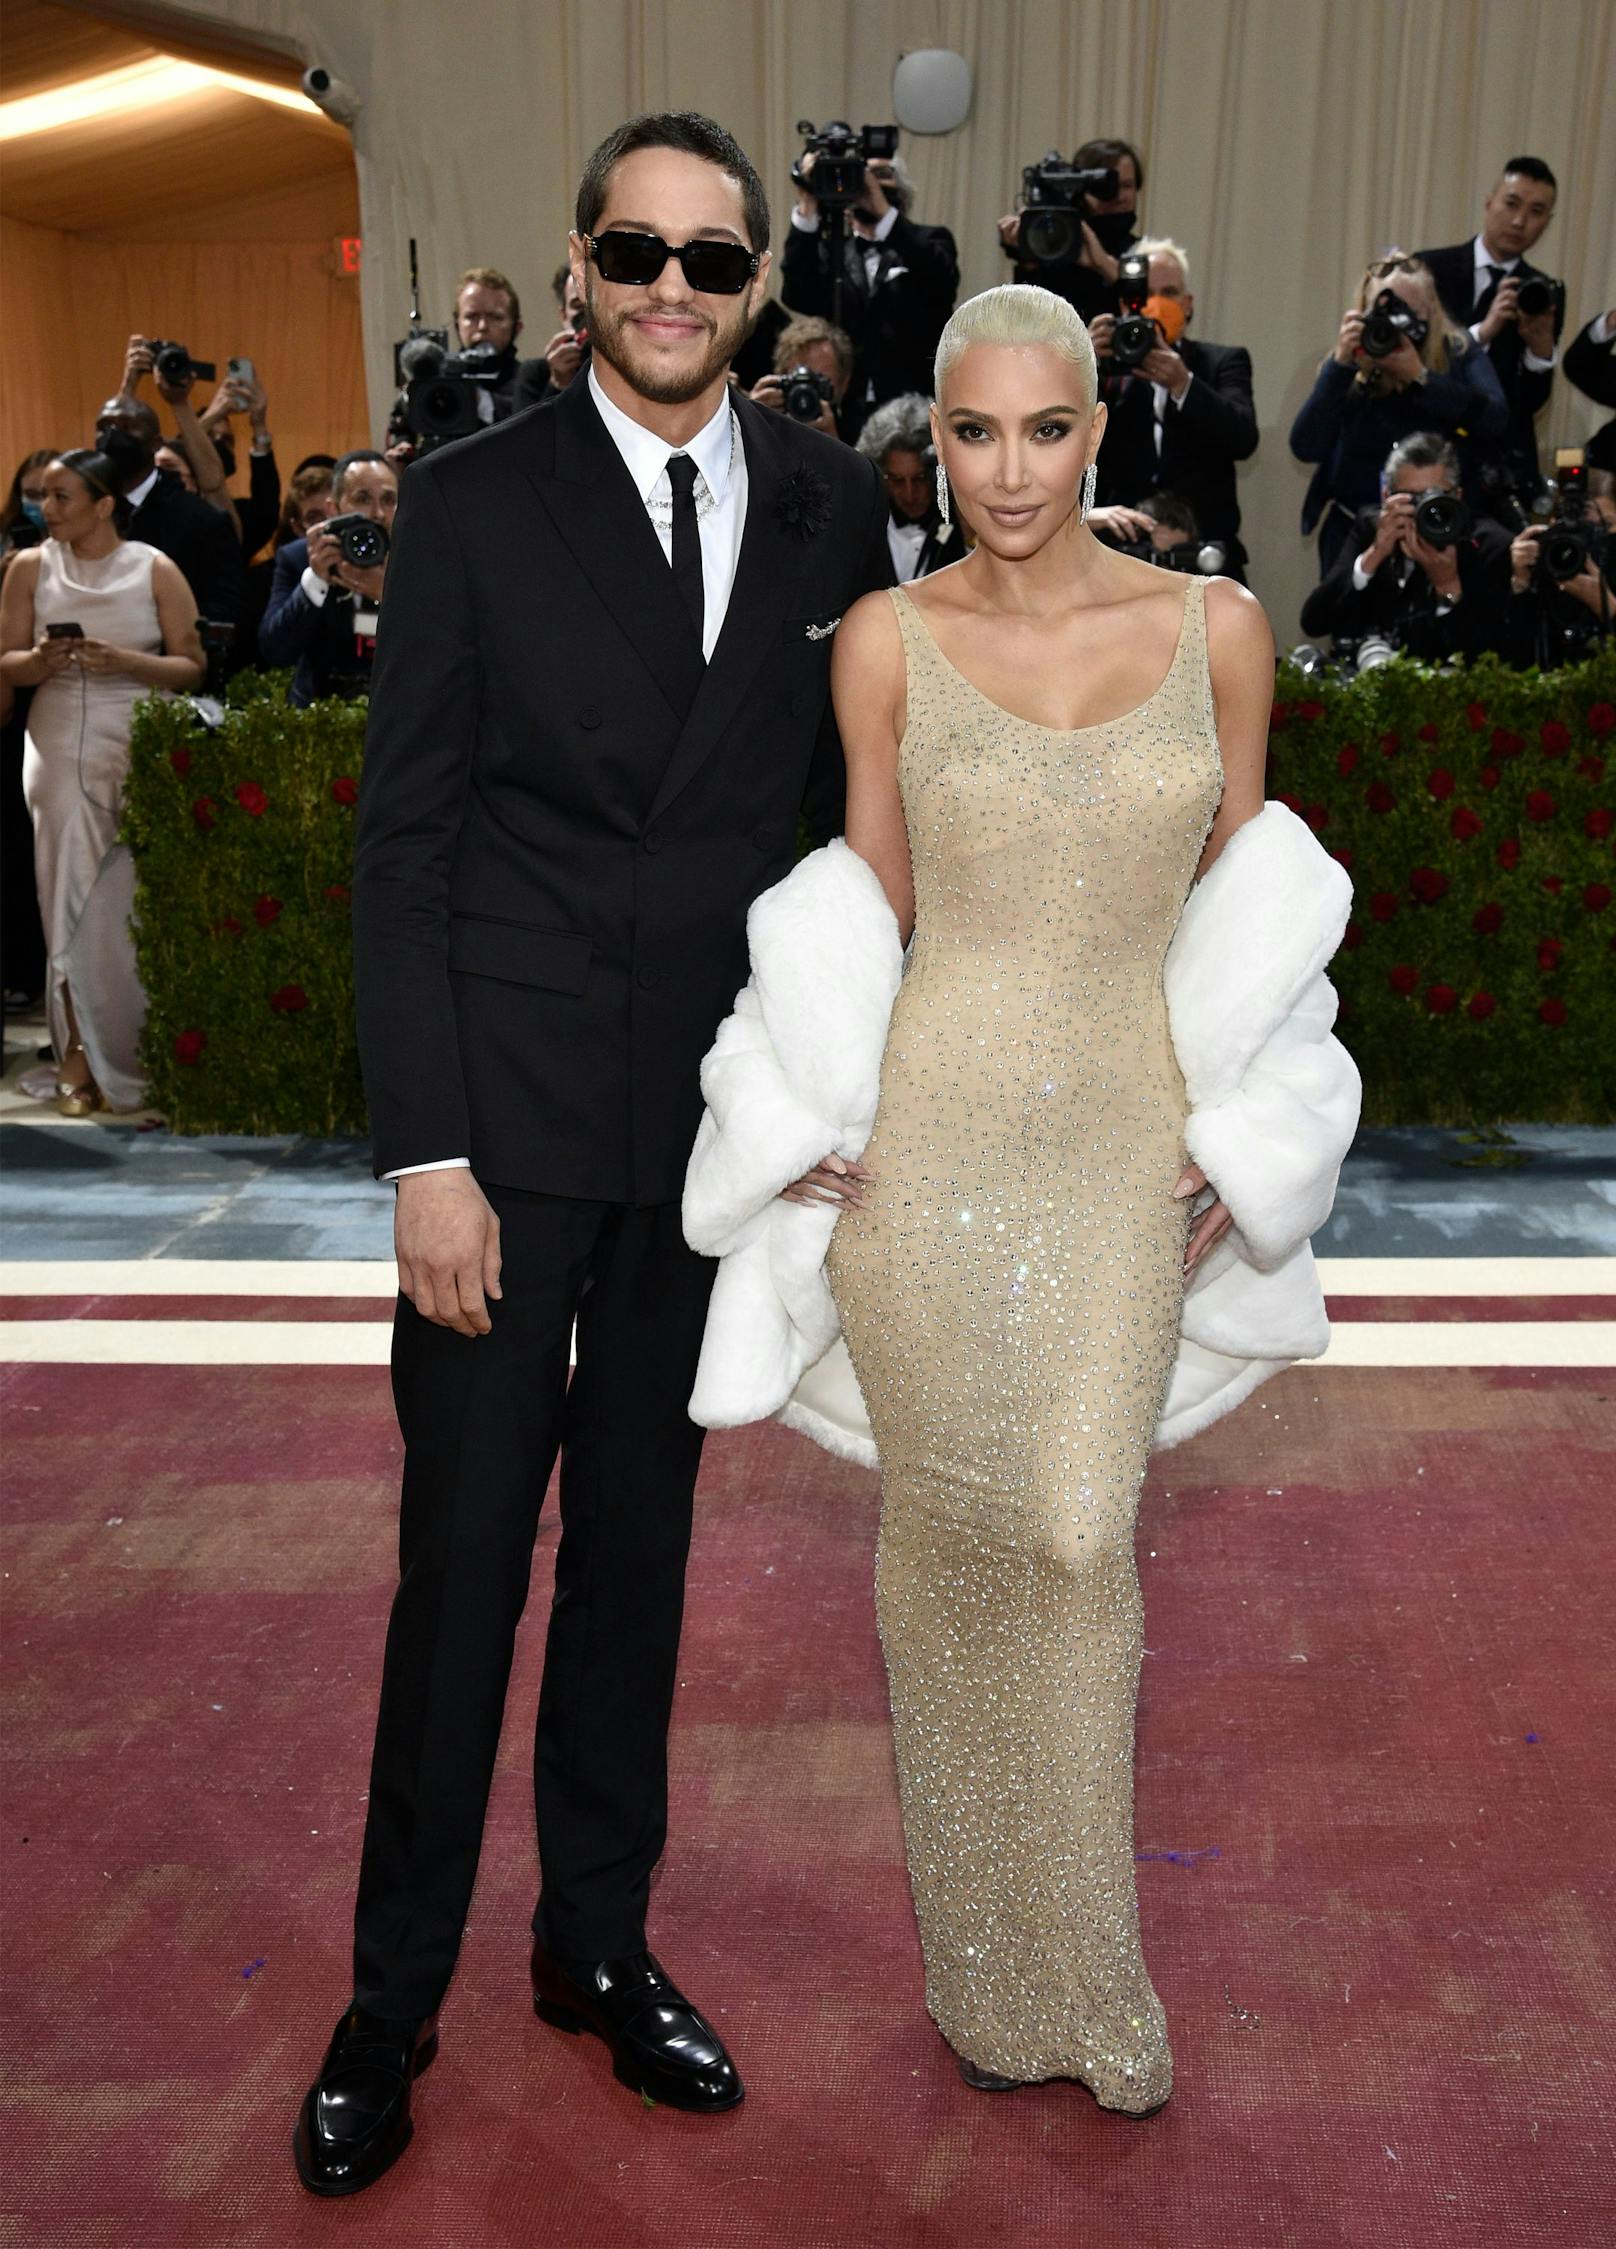 Kim Kardashian im berühmt berüchtigten Marilyn-Monroe-Kleid an der Seite von Pete Davidson.